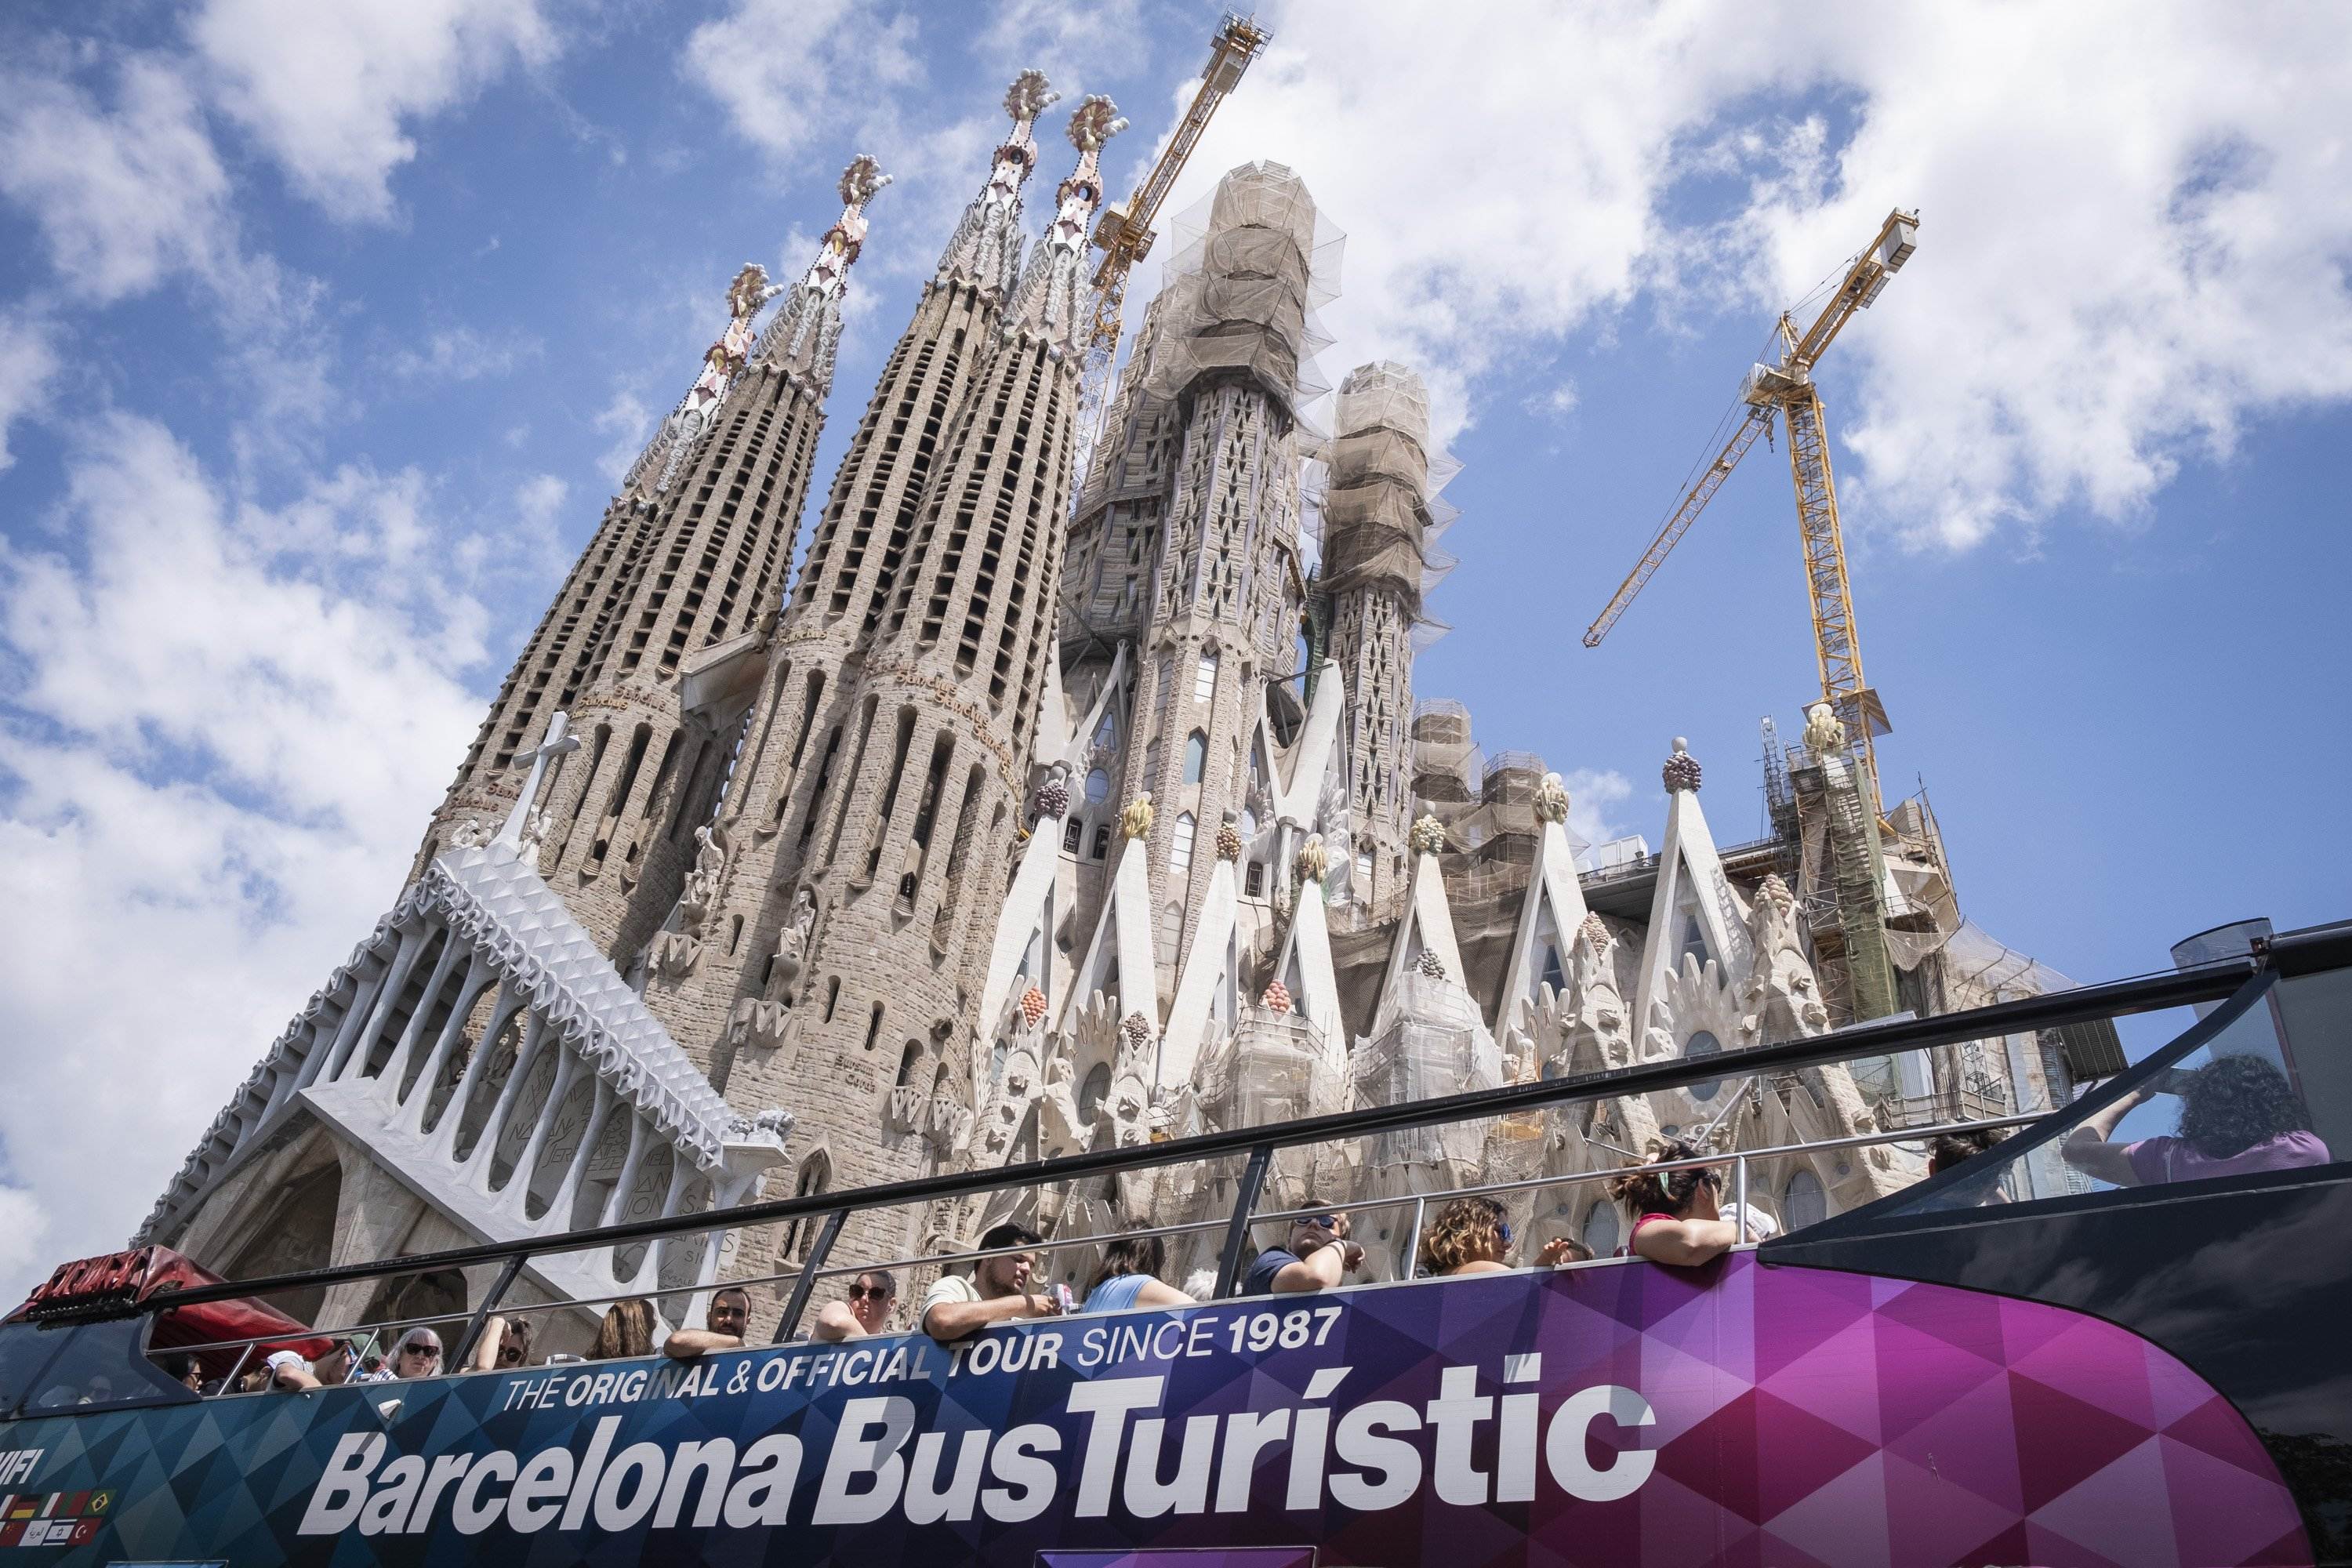 Barcelona elimina set parades de bus turístic al voltant de la Sagrada Família per les queixes dels veïns